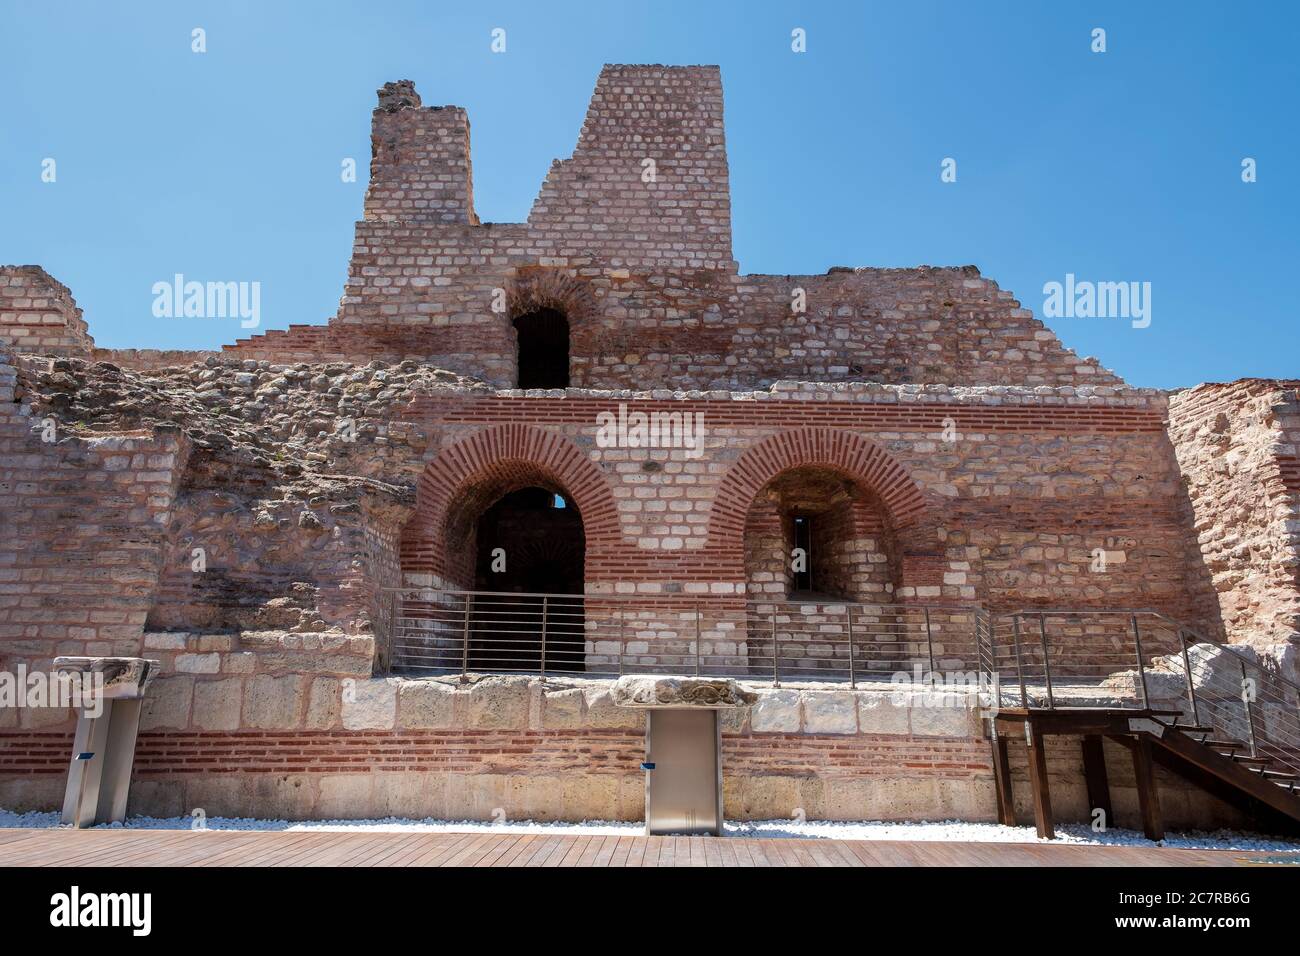 Tekfur Sarayi Museum oder der Palast des Porphyrogenitus, ein byzantinischer Palast aus dem 13. Jahrhundert. Der dickwandige Palast, der an die Landmauern angrenzt. Stockfoto